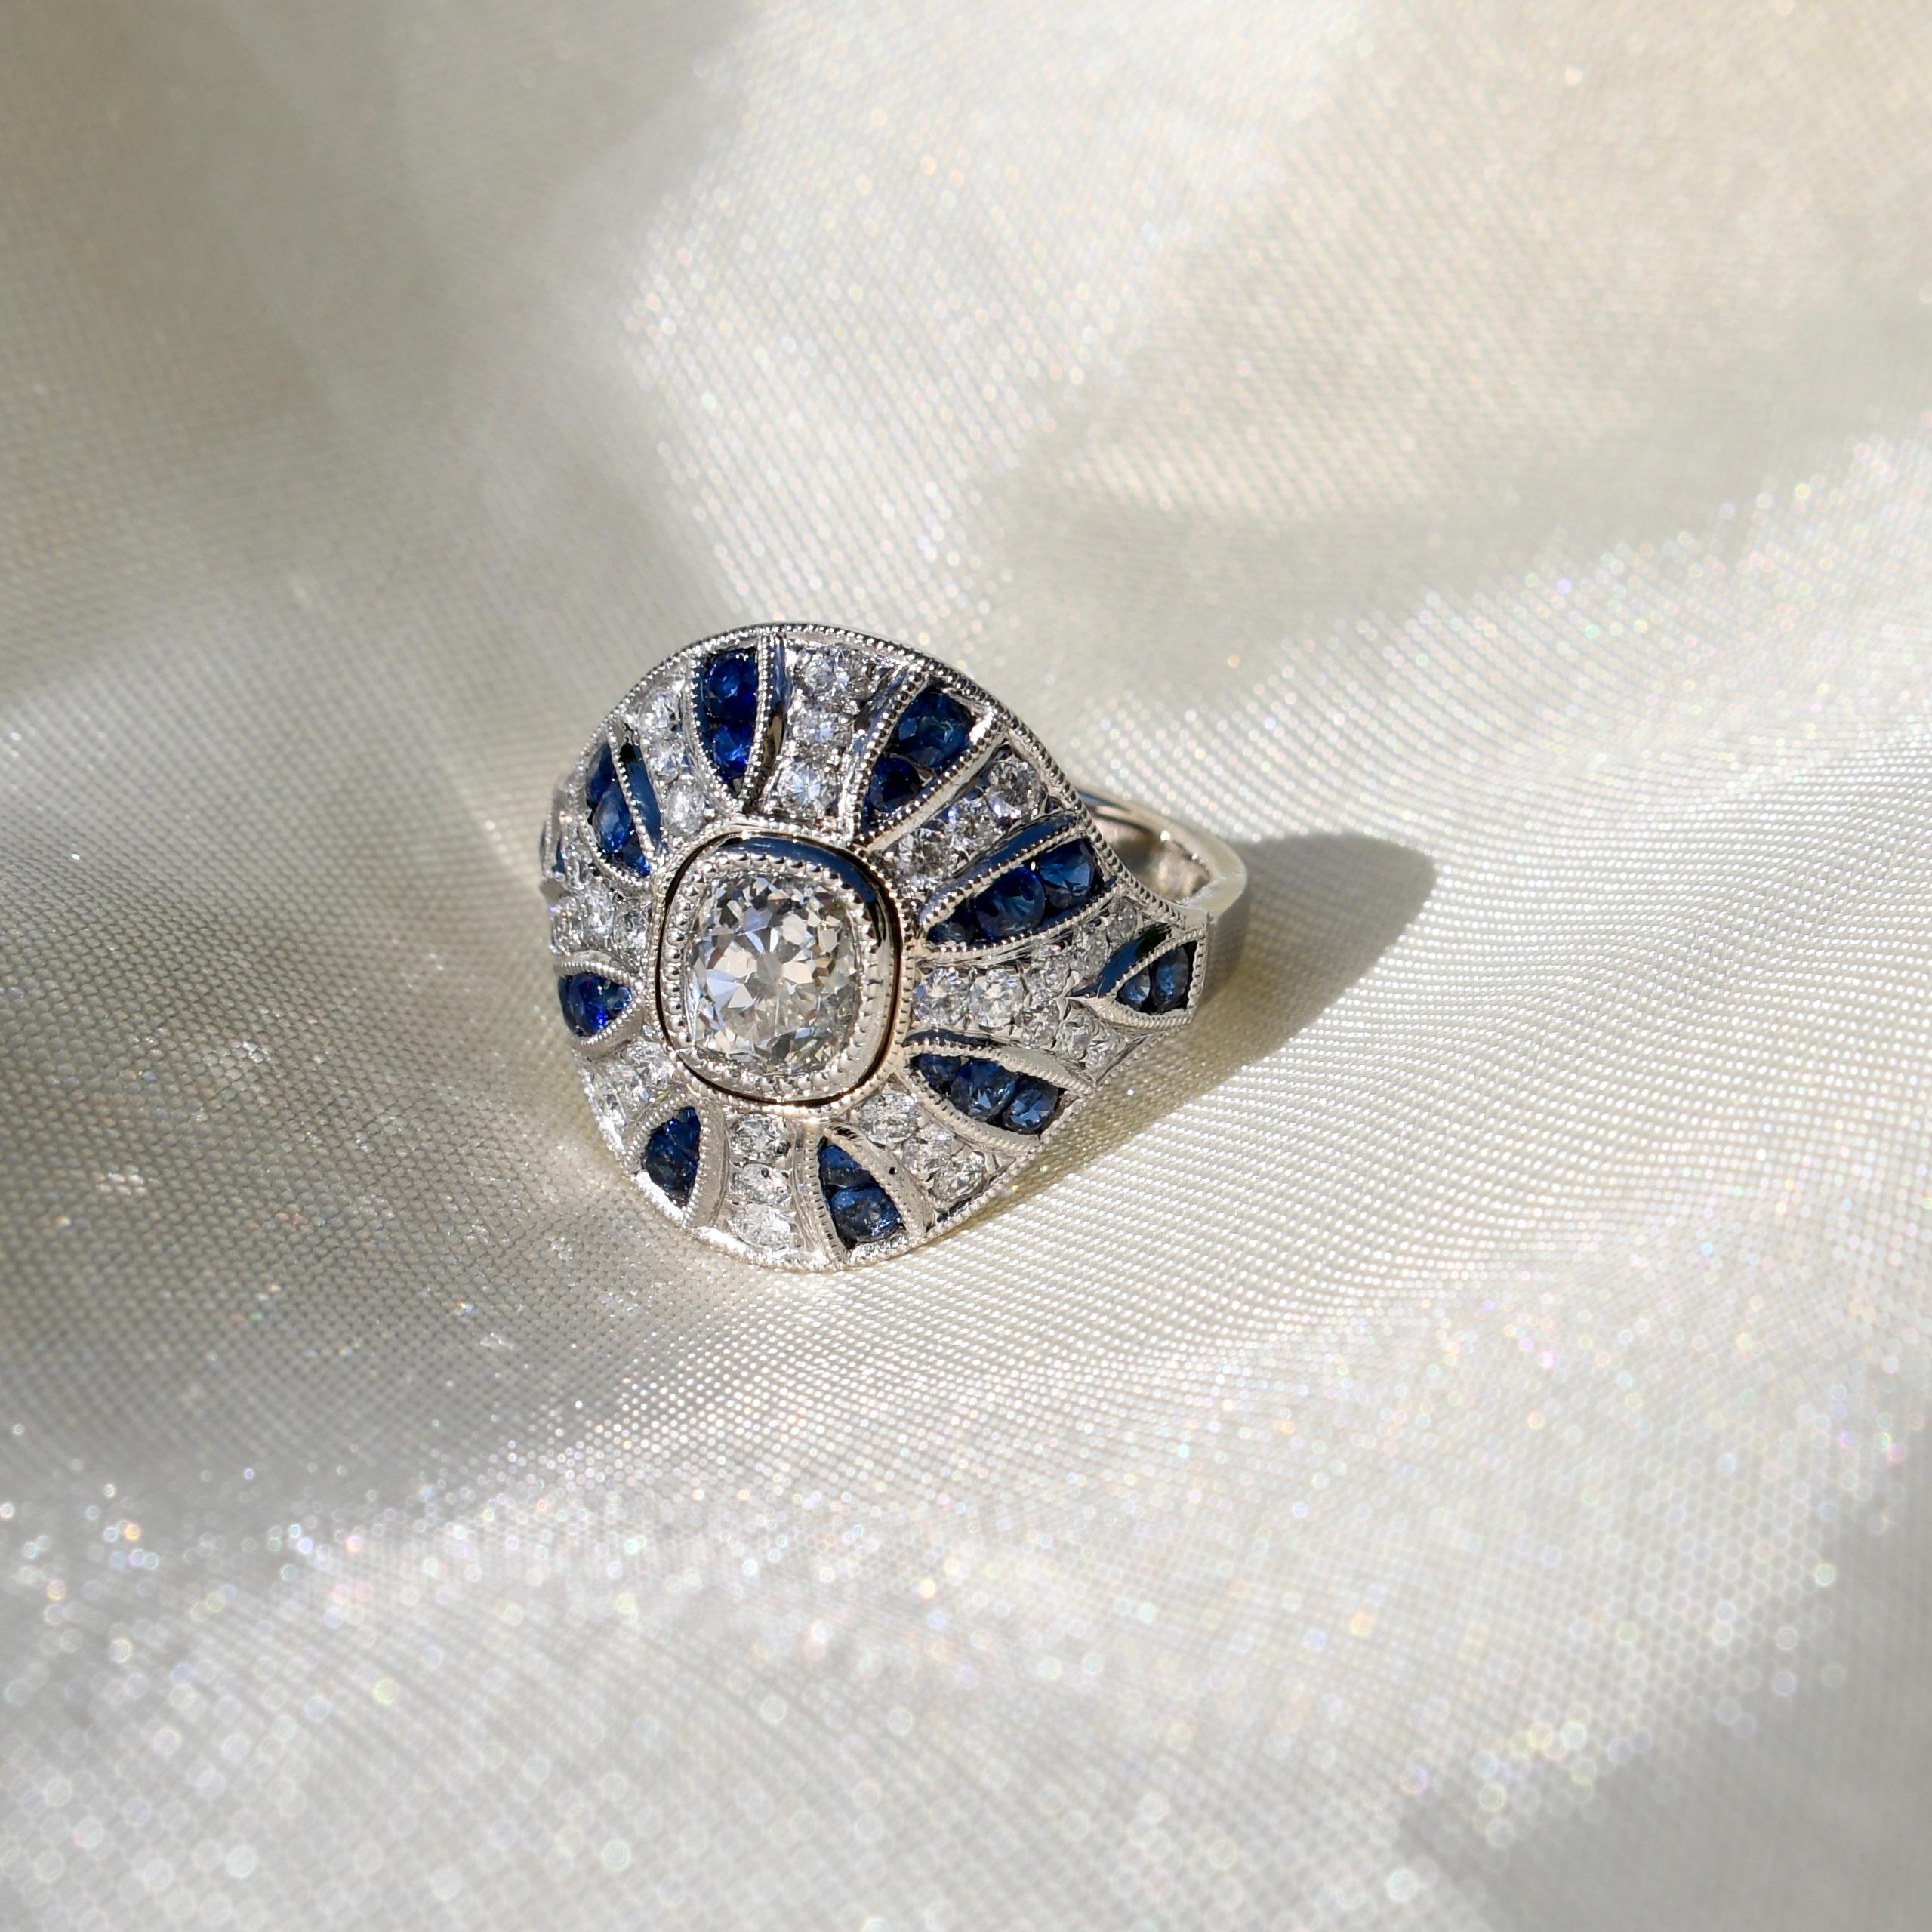 Dieser Ring wurde neu angefertigt und ist in ausgezeichnetem Zustand. 

- Ein GIA-zertifizierter Diamant im alten Minenschliff, 1,10 ct (J/ SI1) 
- Vierunddreißig Diamanten im Brillantschliff, insgesamt 0,56 Karat 
- Achtundzwanzig Saphire,